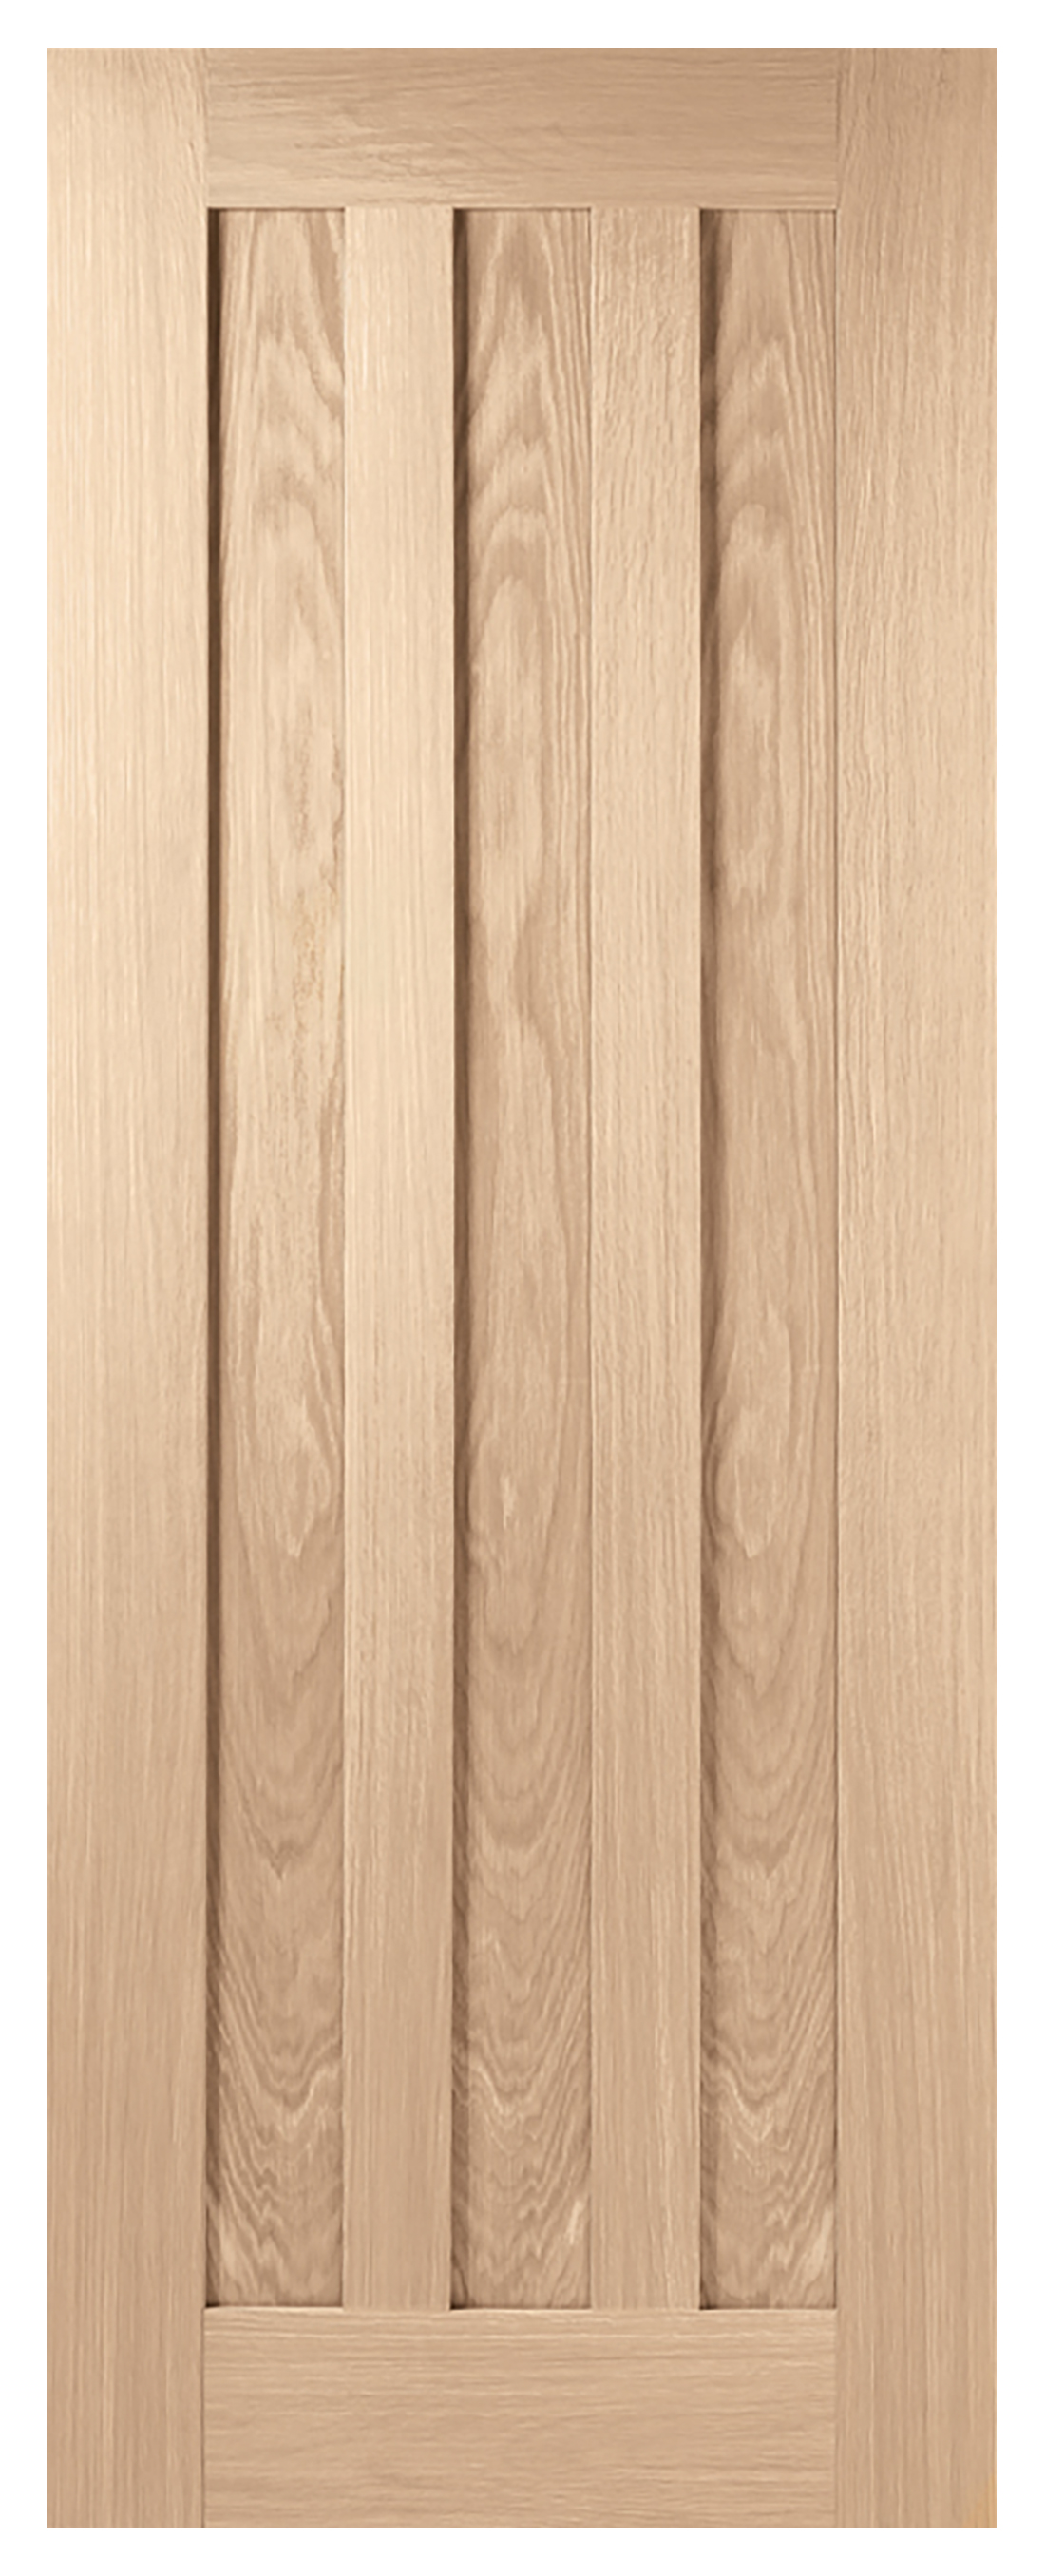 Image of LPD Internal Idaho 3 Panel Pre-Finished Oak FD30 Fire Door - 726 x 2040mm